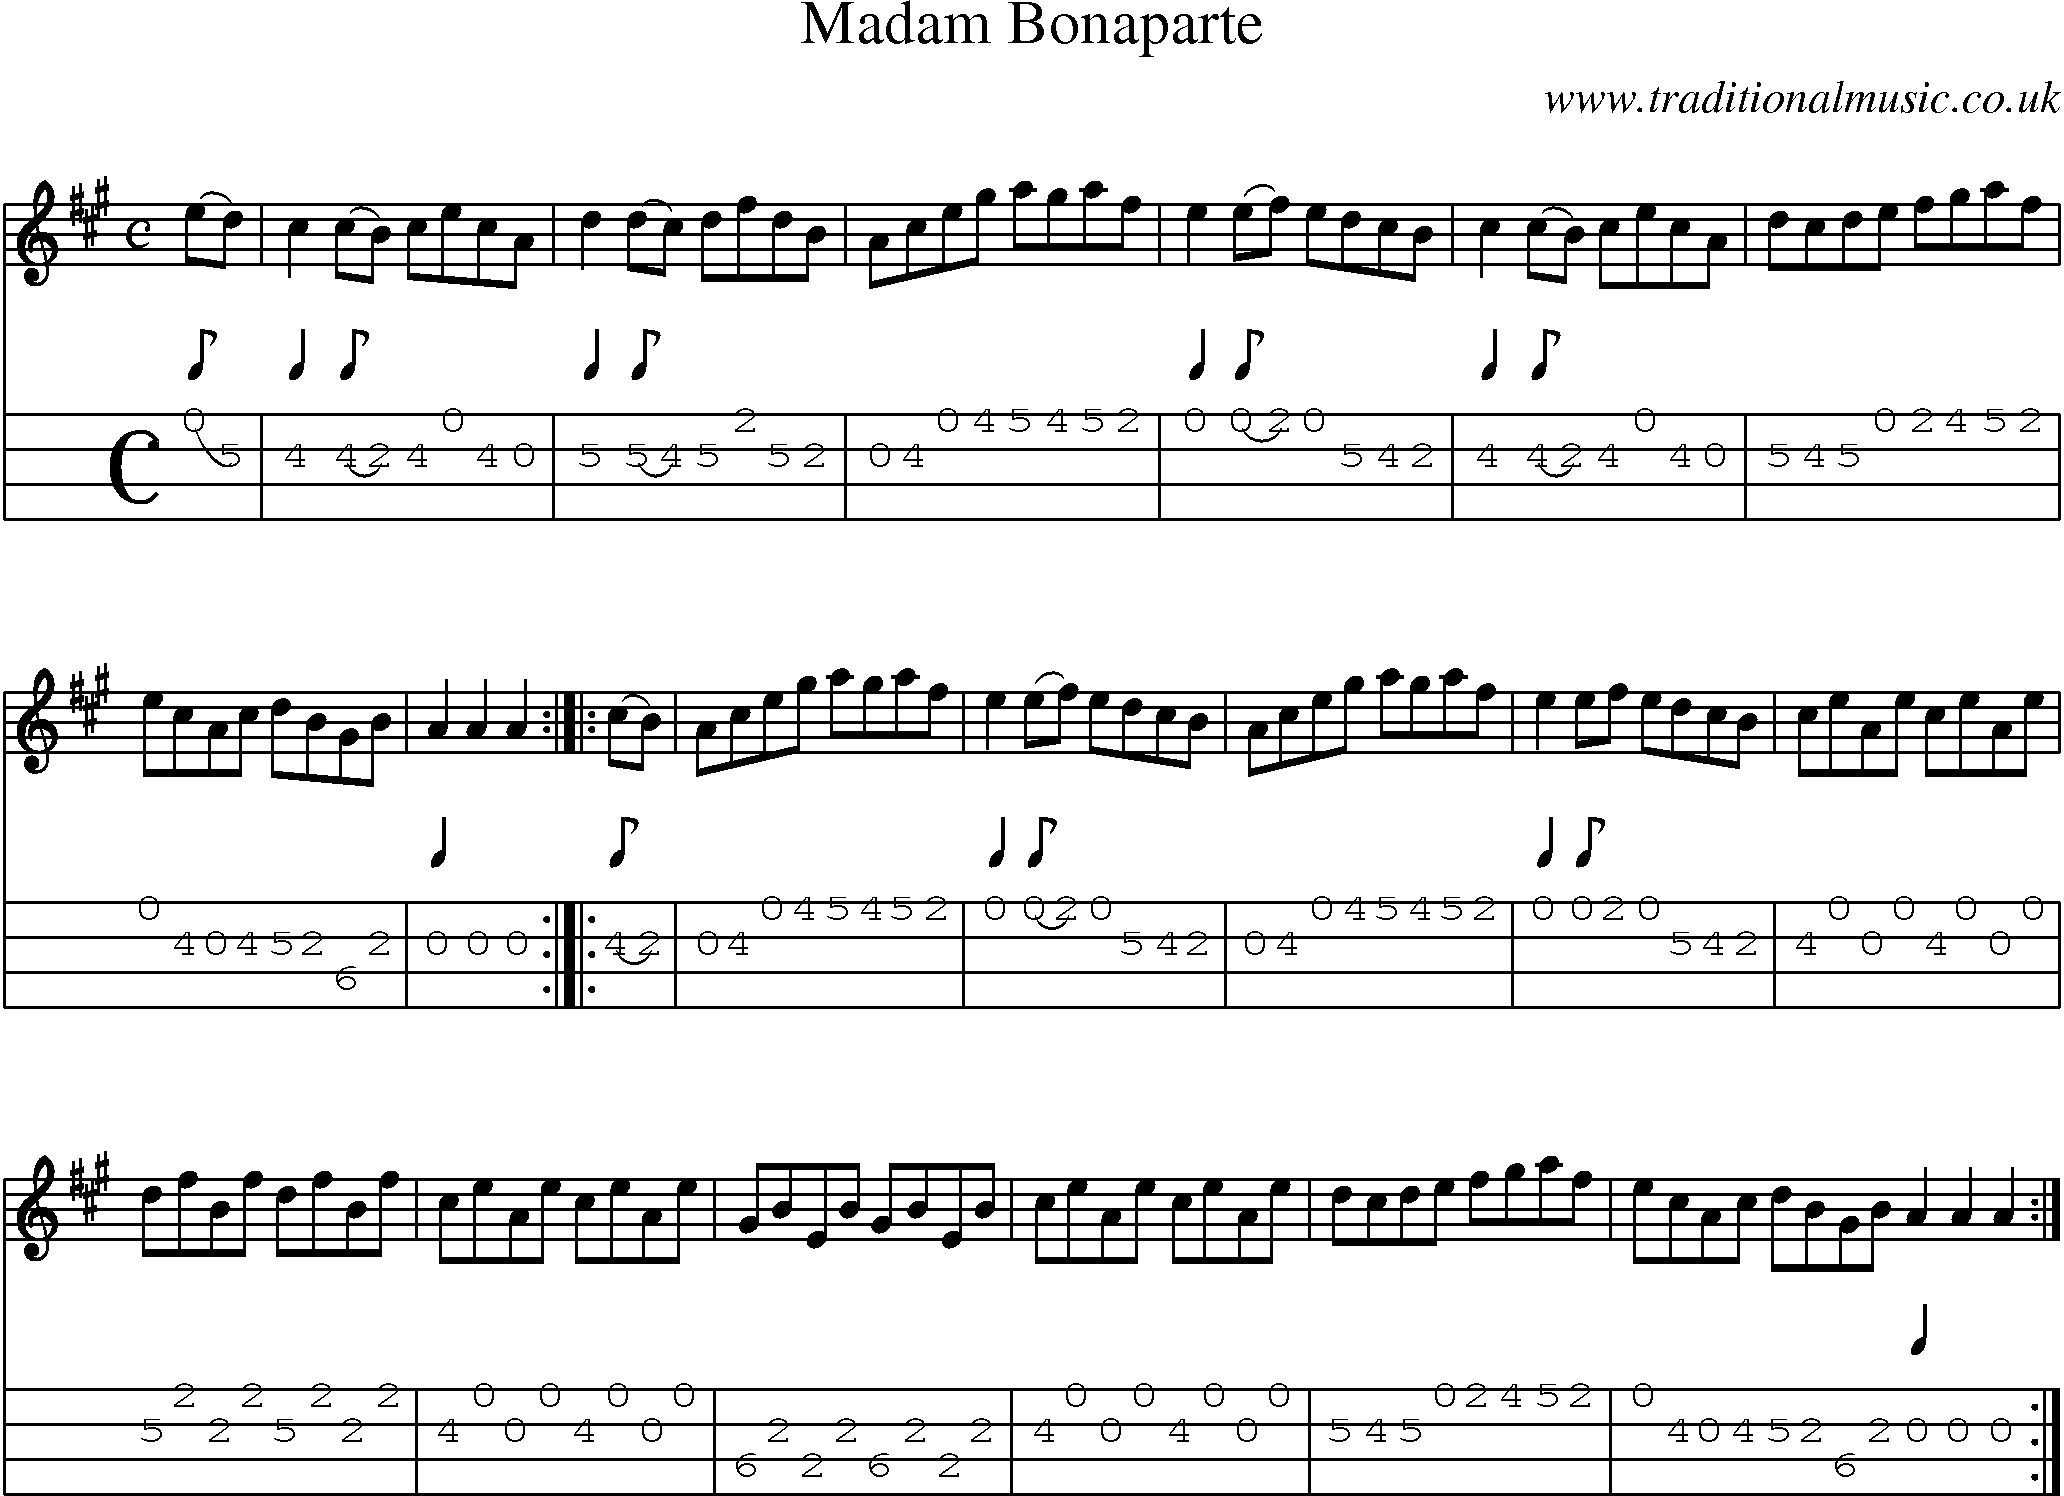 Music Score and Mandolin Tabs for Madam Bonaparte